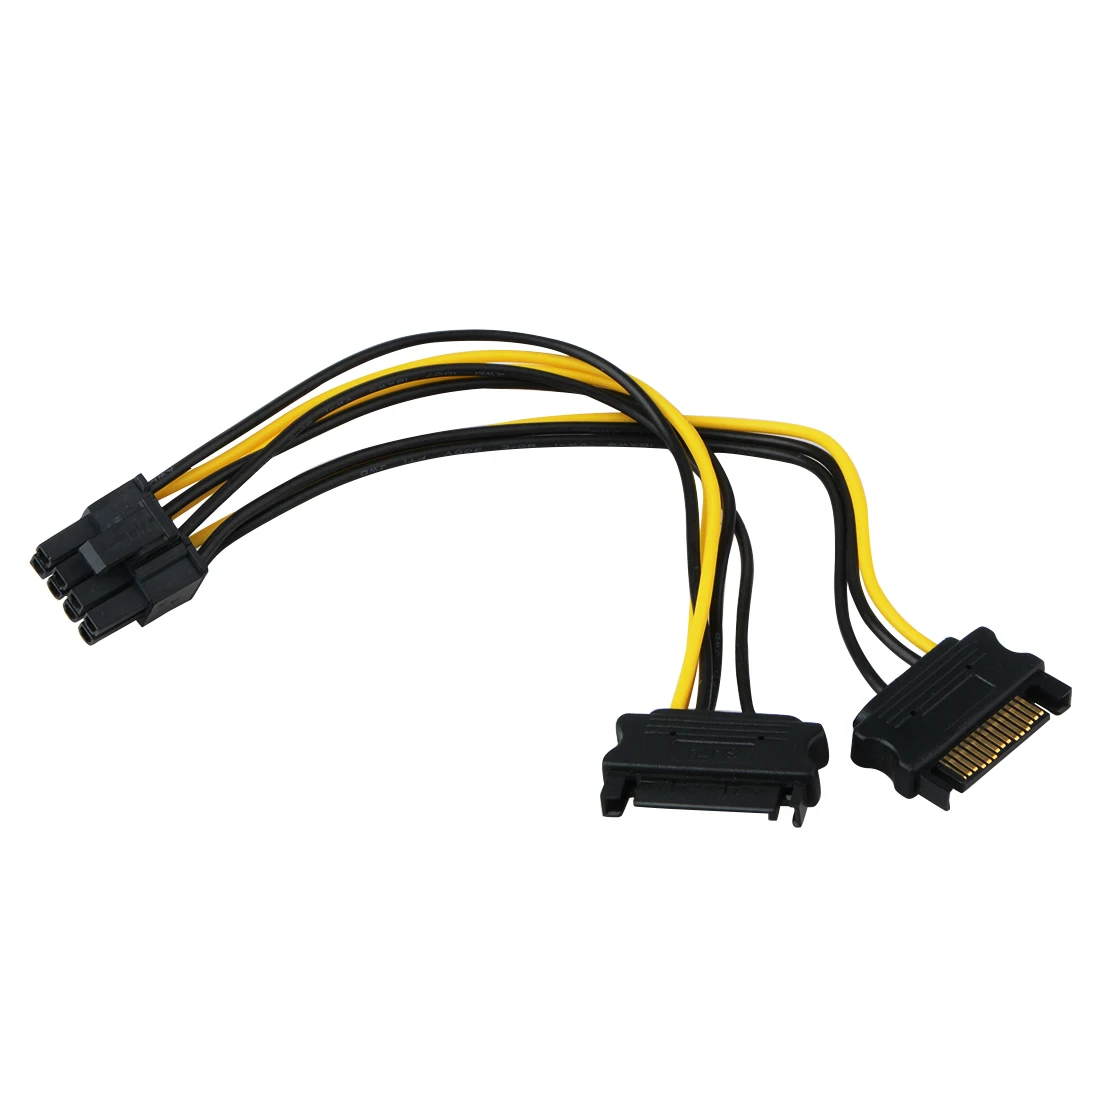 2 шт. двойной 15Pin SATA мужчин и PCIe 8Pin (6 + 2) мужской видео карты Splitter адаптер Питание кабельные разъемы